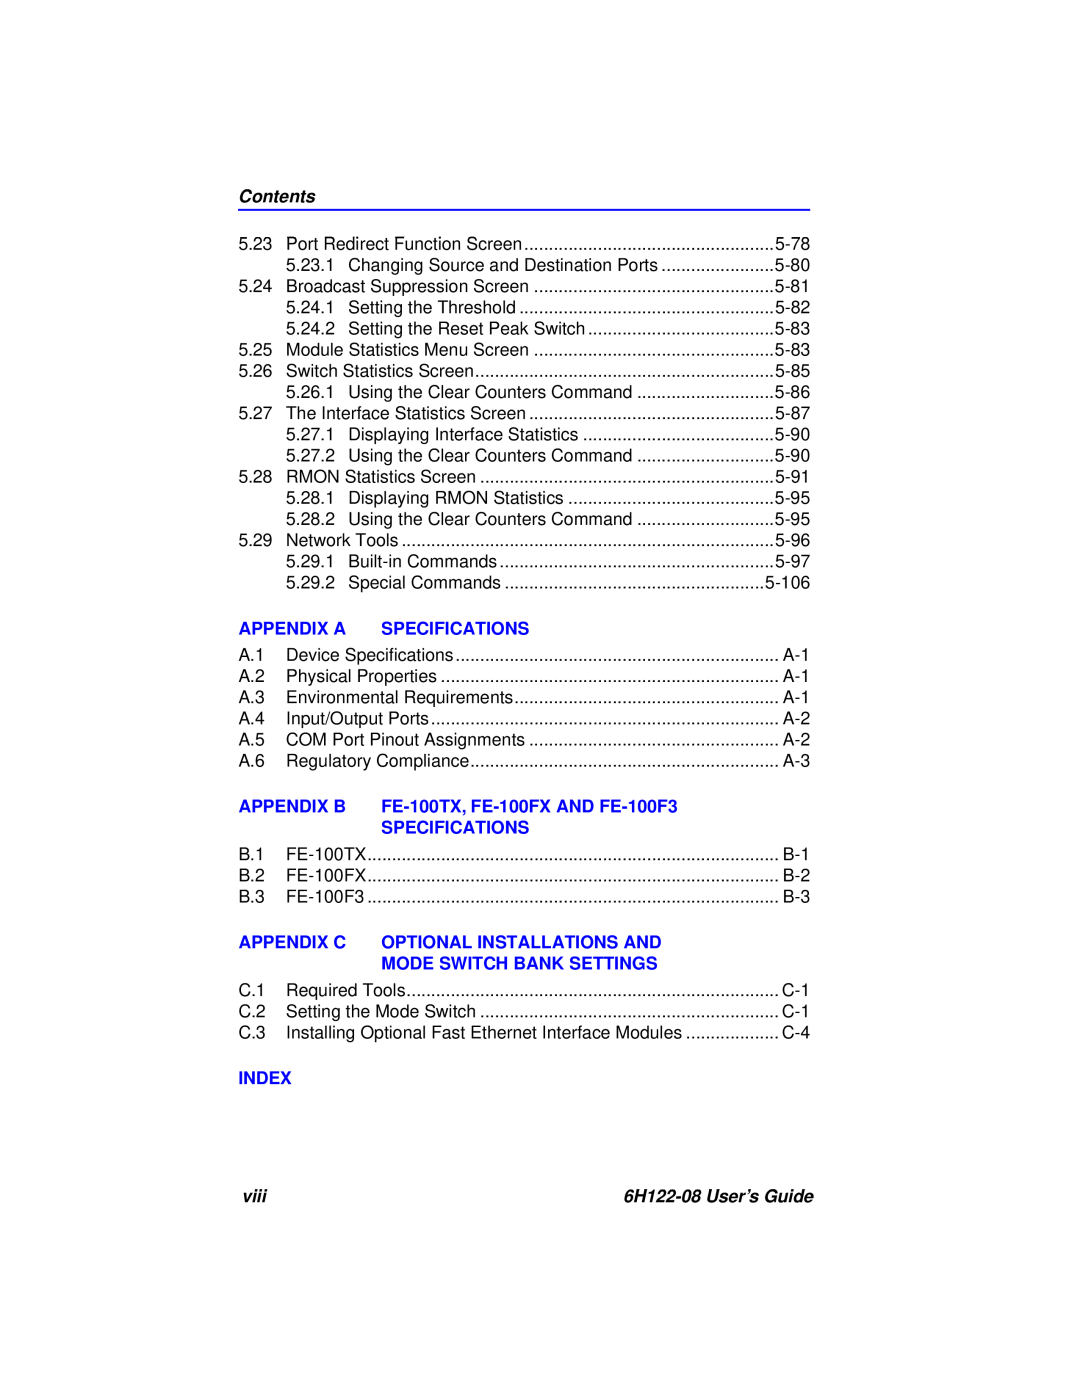 Cabletron Systems 6H122-08 Contents, Appendix A, Specifications, Appendix B, FE-100TX, FE-100FX AND FE-100F3, Appendix C 